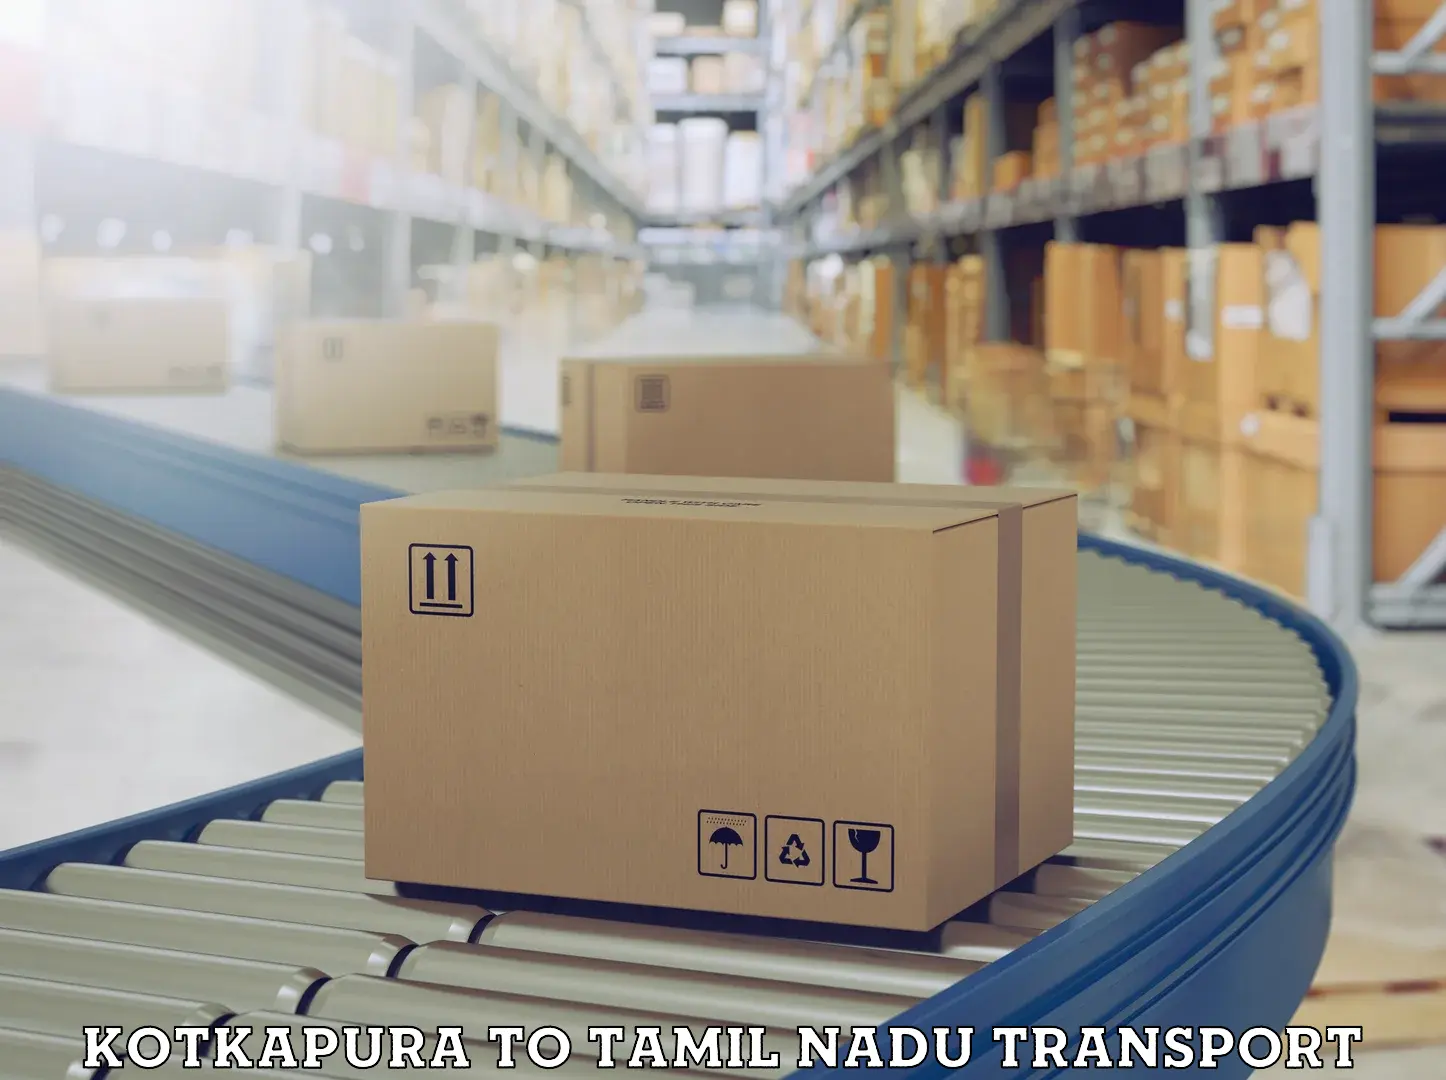 Online transport service in Kotkapura to Tamil Nadu